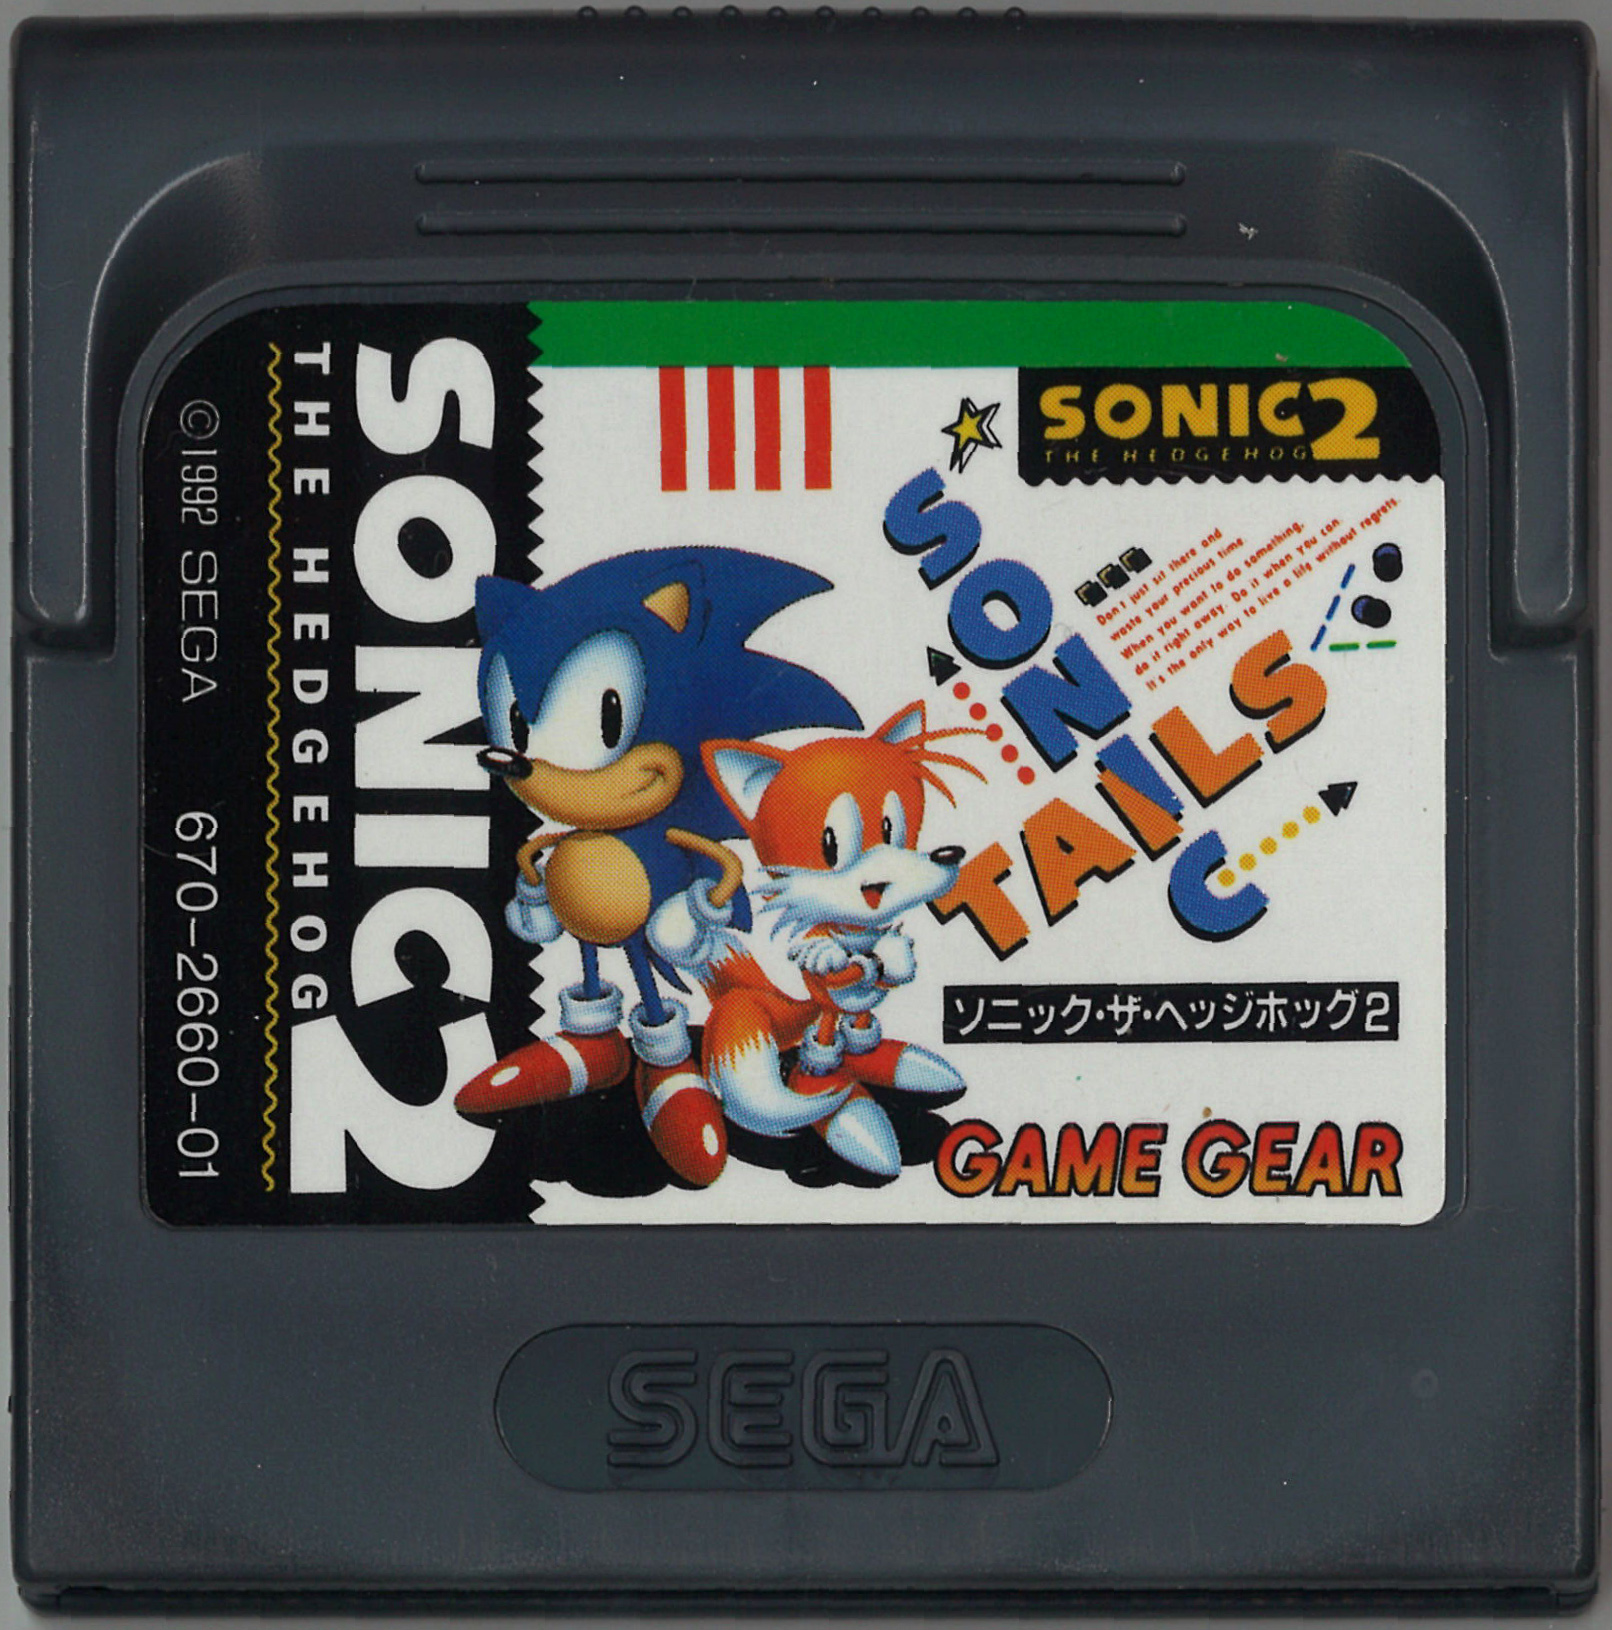 Игра сега картриджи. Sega Sonic 2 картриджа. Картридж Sonic the Hedgehog 2 (Sega Mega Drive). Sonic 2 Cartridge русская версия. Sonic 1 Cartridge.